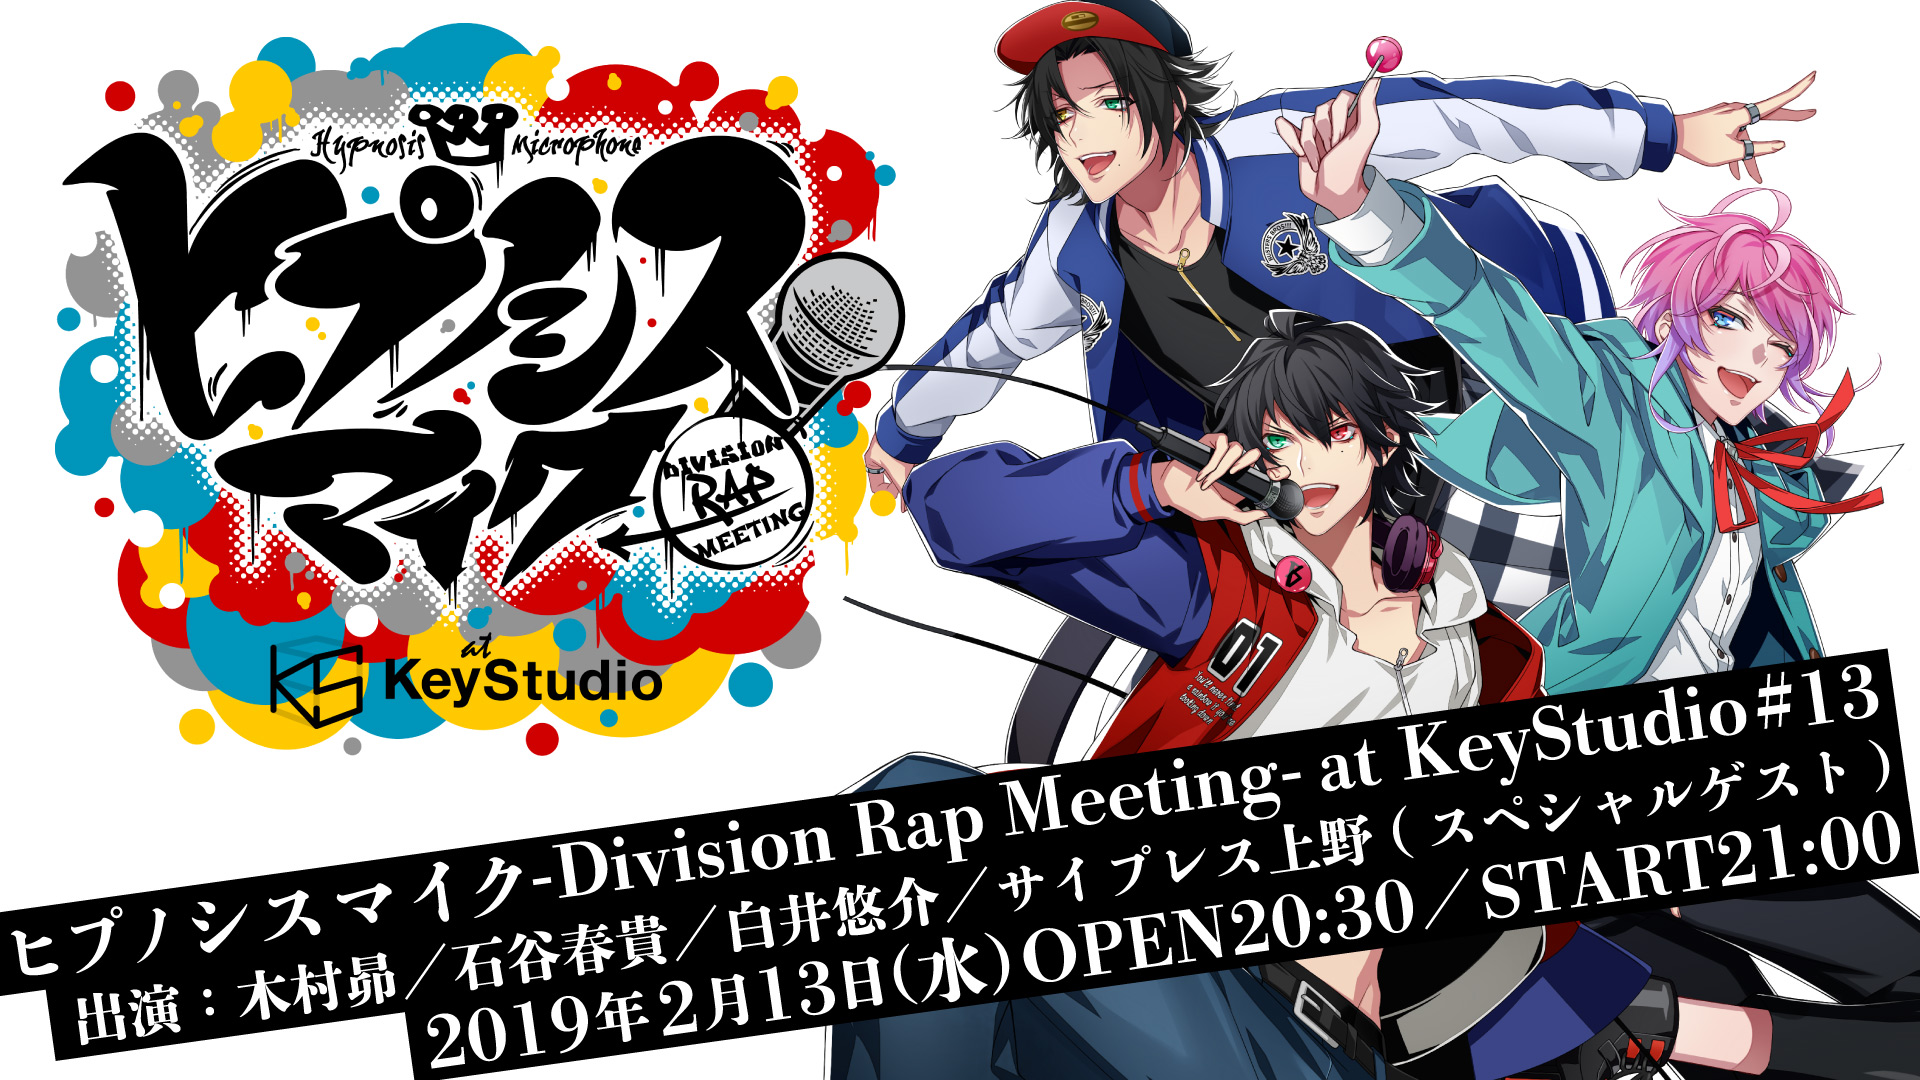 ヒプノシスマイク -Division Rap Meeting- at KeyStudio #13